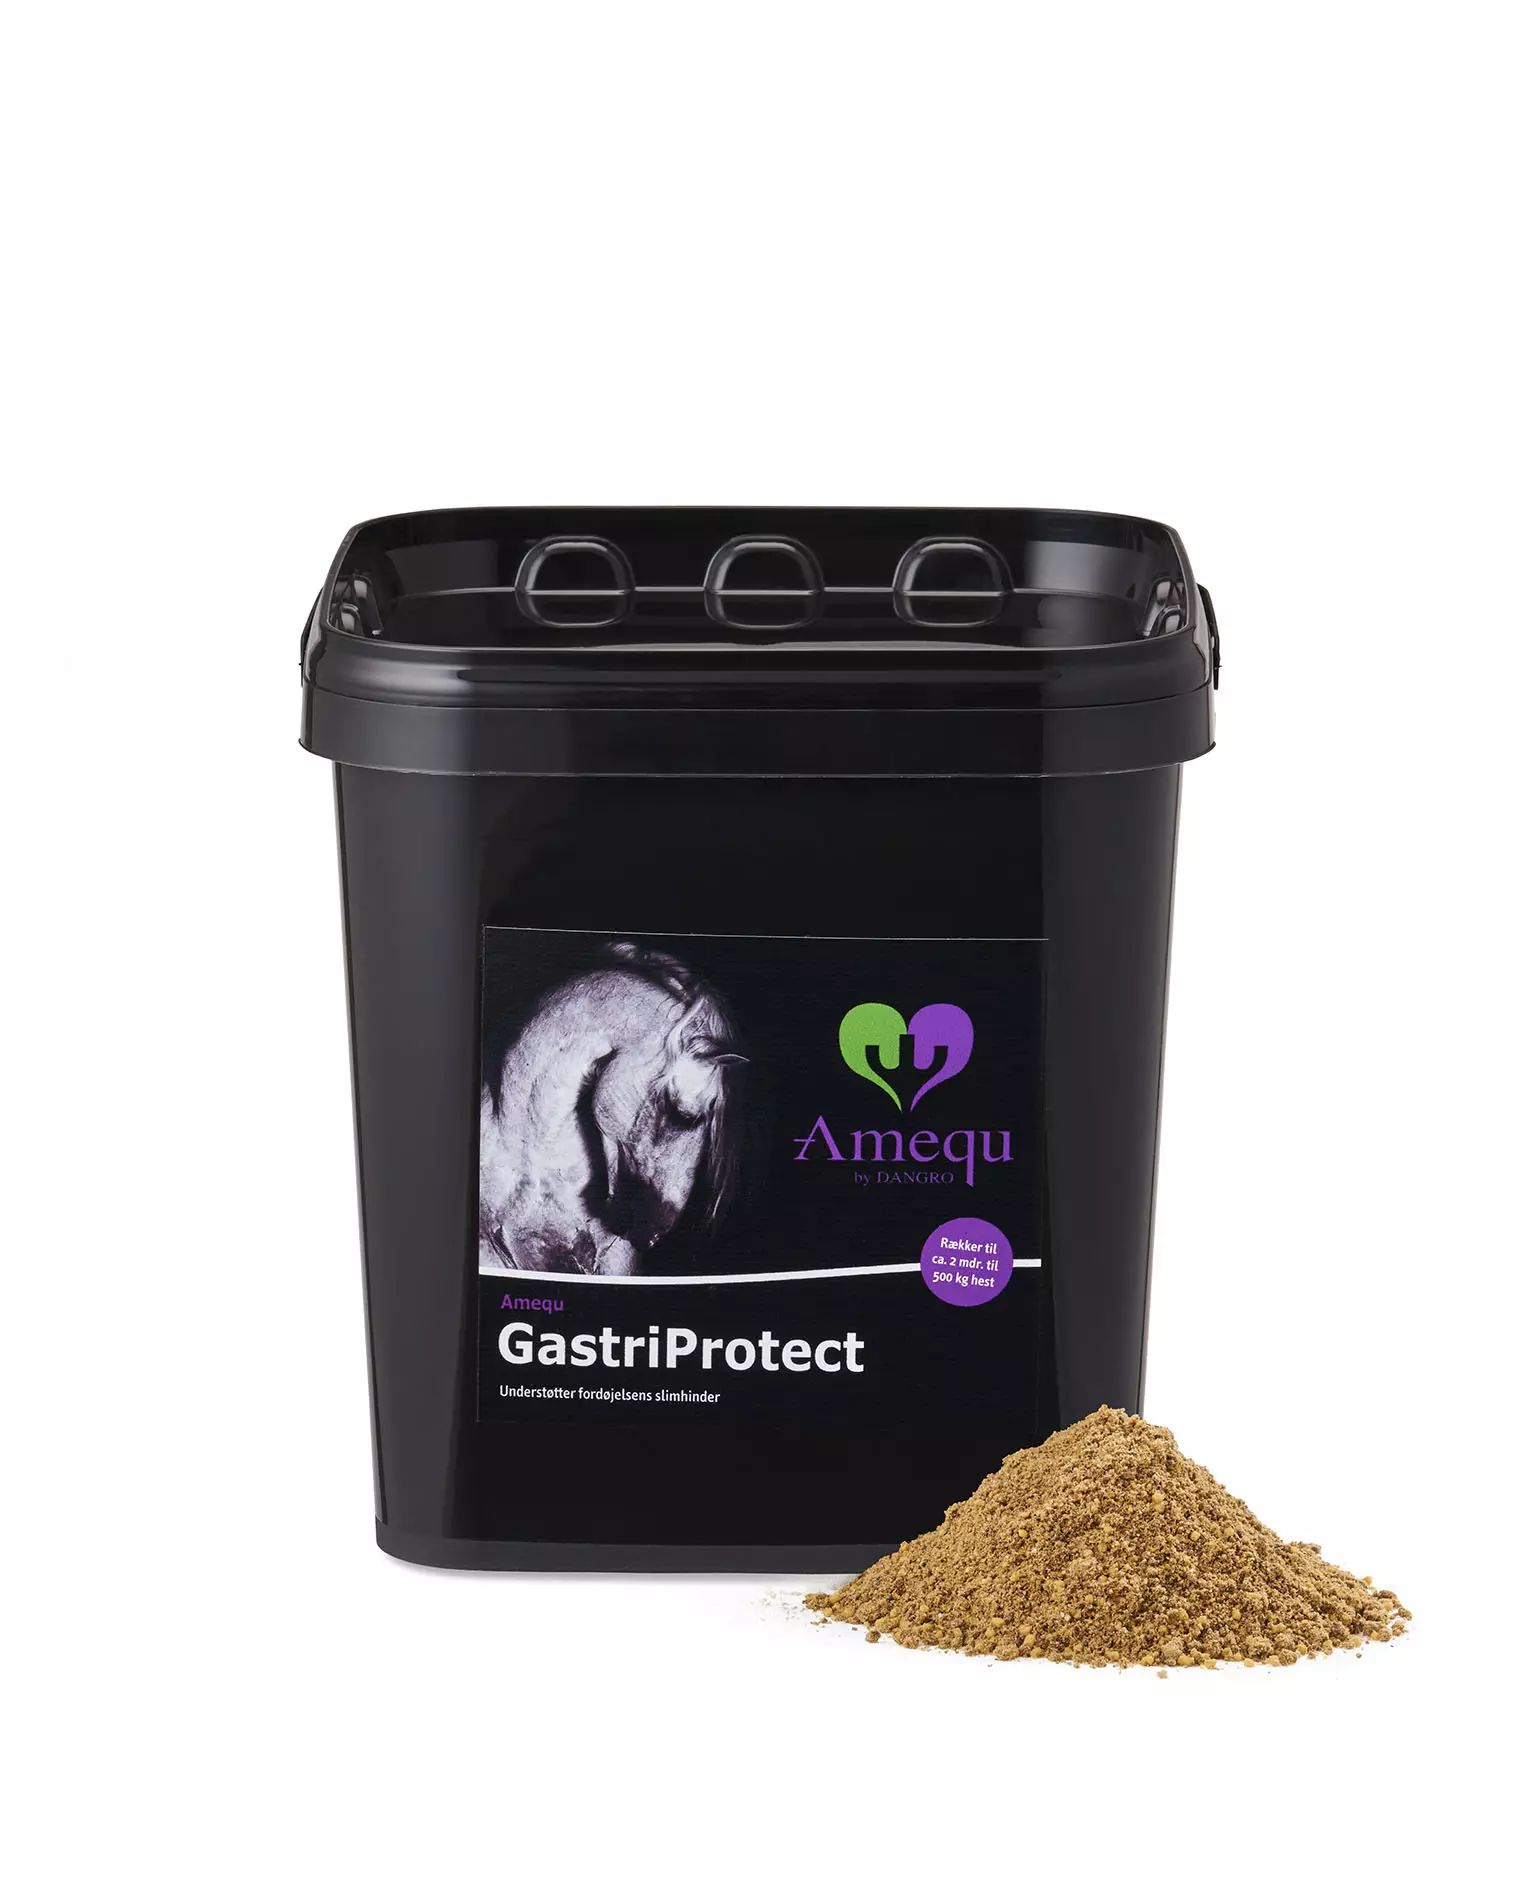 GastriProtect (3dl sample) - GastriPrNäyte - Product sample -  